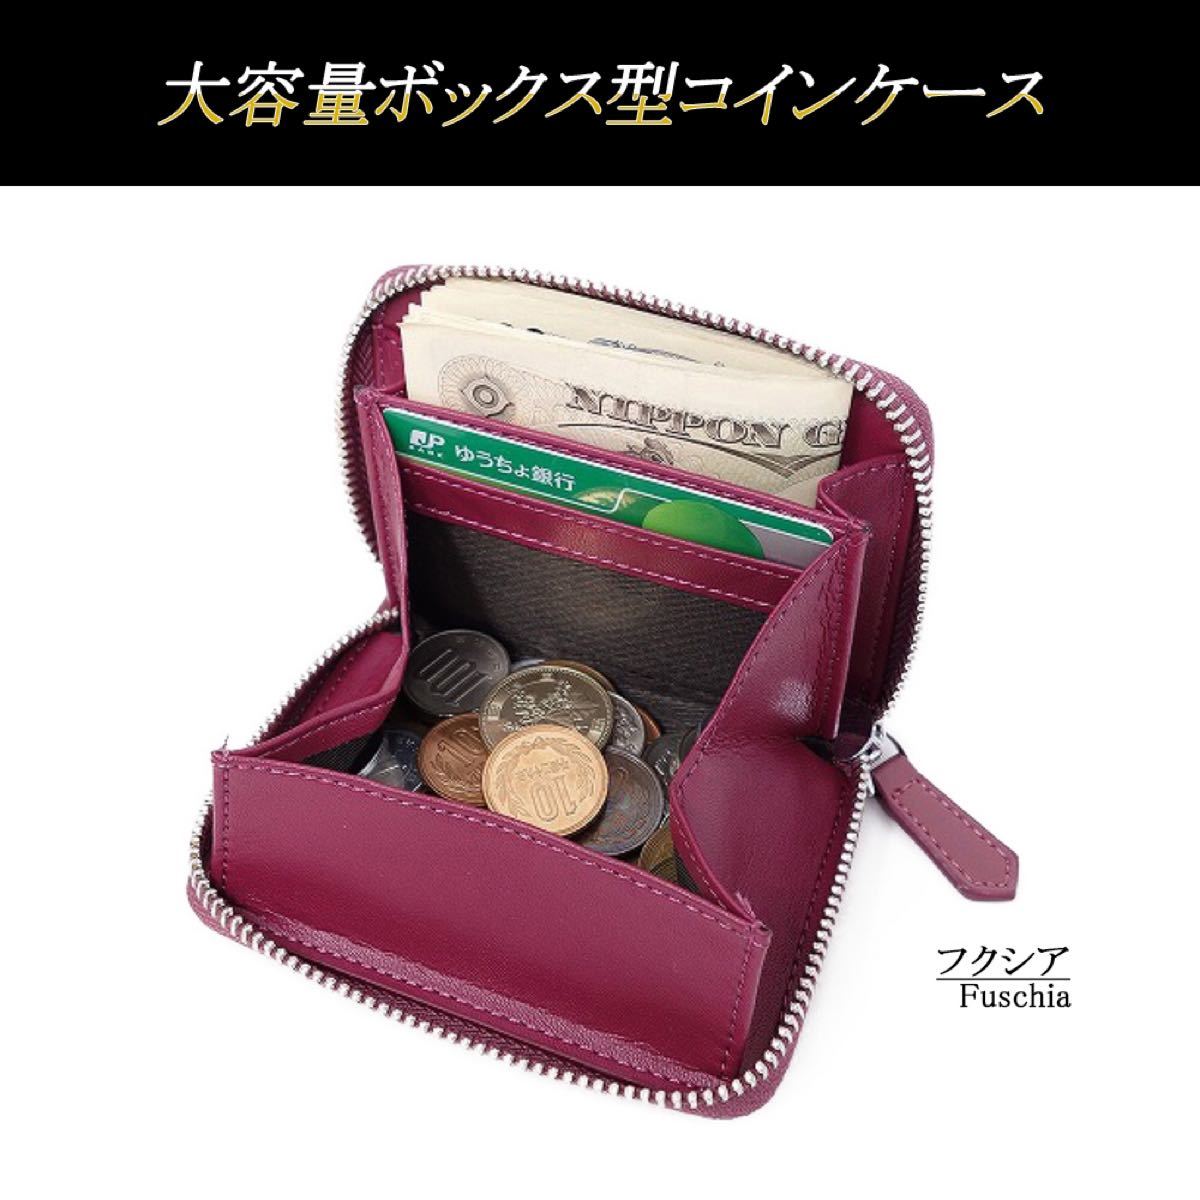 小銭入れ コインケース ボックス型 メンズ レディース 財布【フクシア】